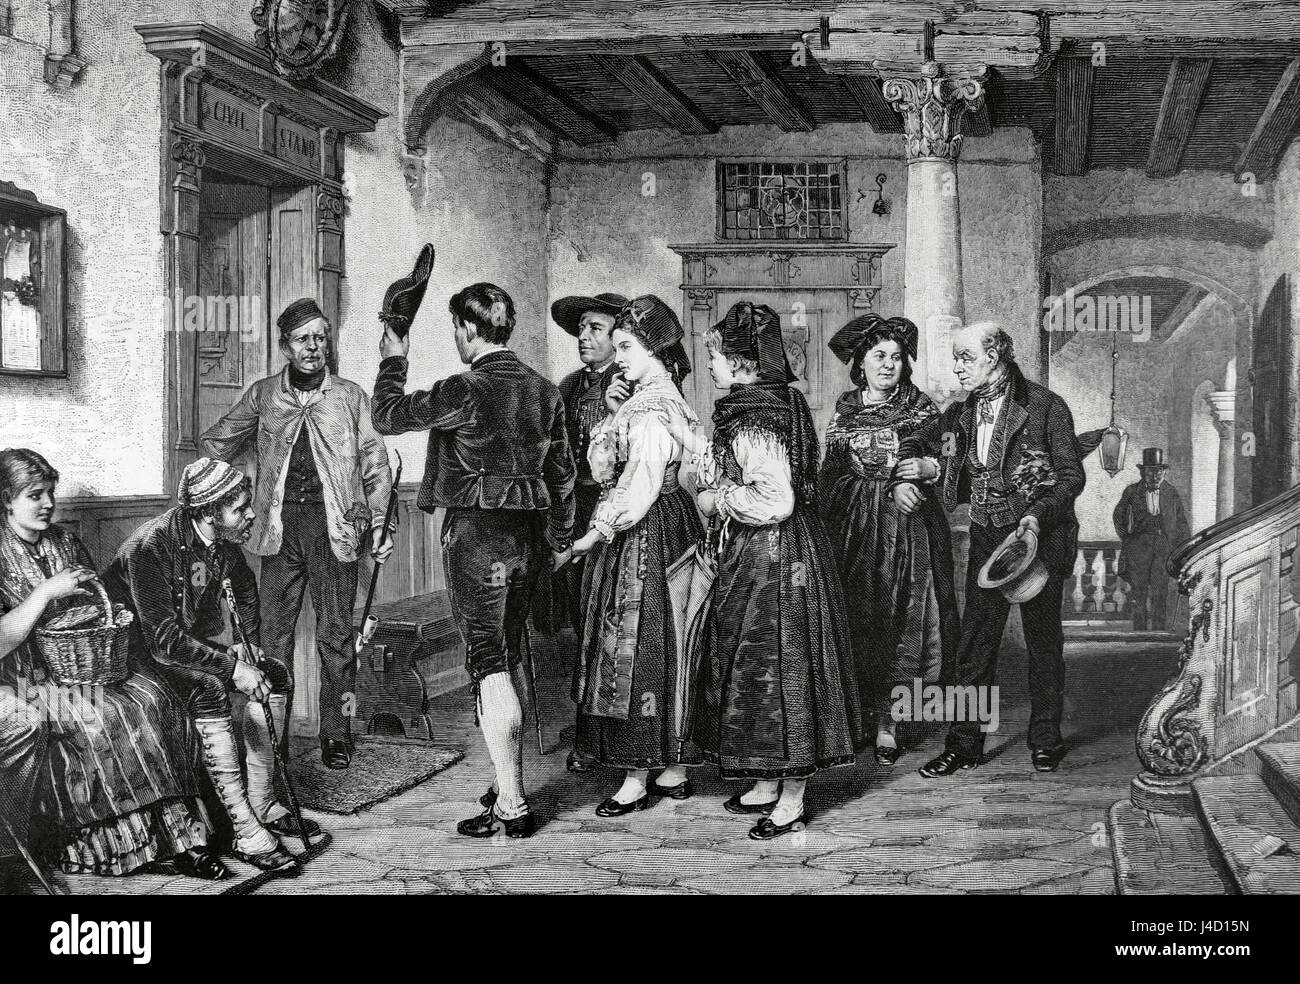 Standesamtliche Trauung. Kupferstich von Richard Brend'amour (1831-1915) nach einem Gemälde des Schweizer Künstlers Benjamin Vautier (1829-1898). "La Ilustracion Artistica", 1884. Stockfoto